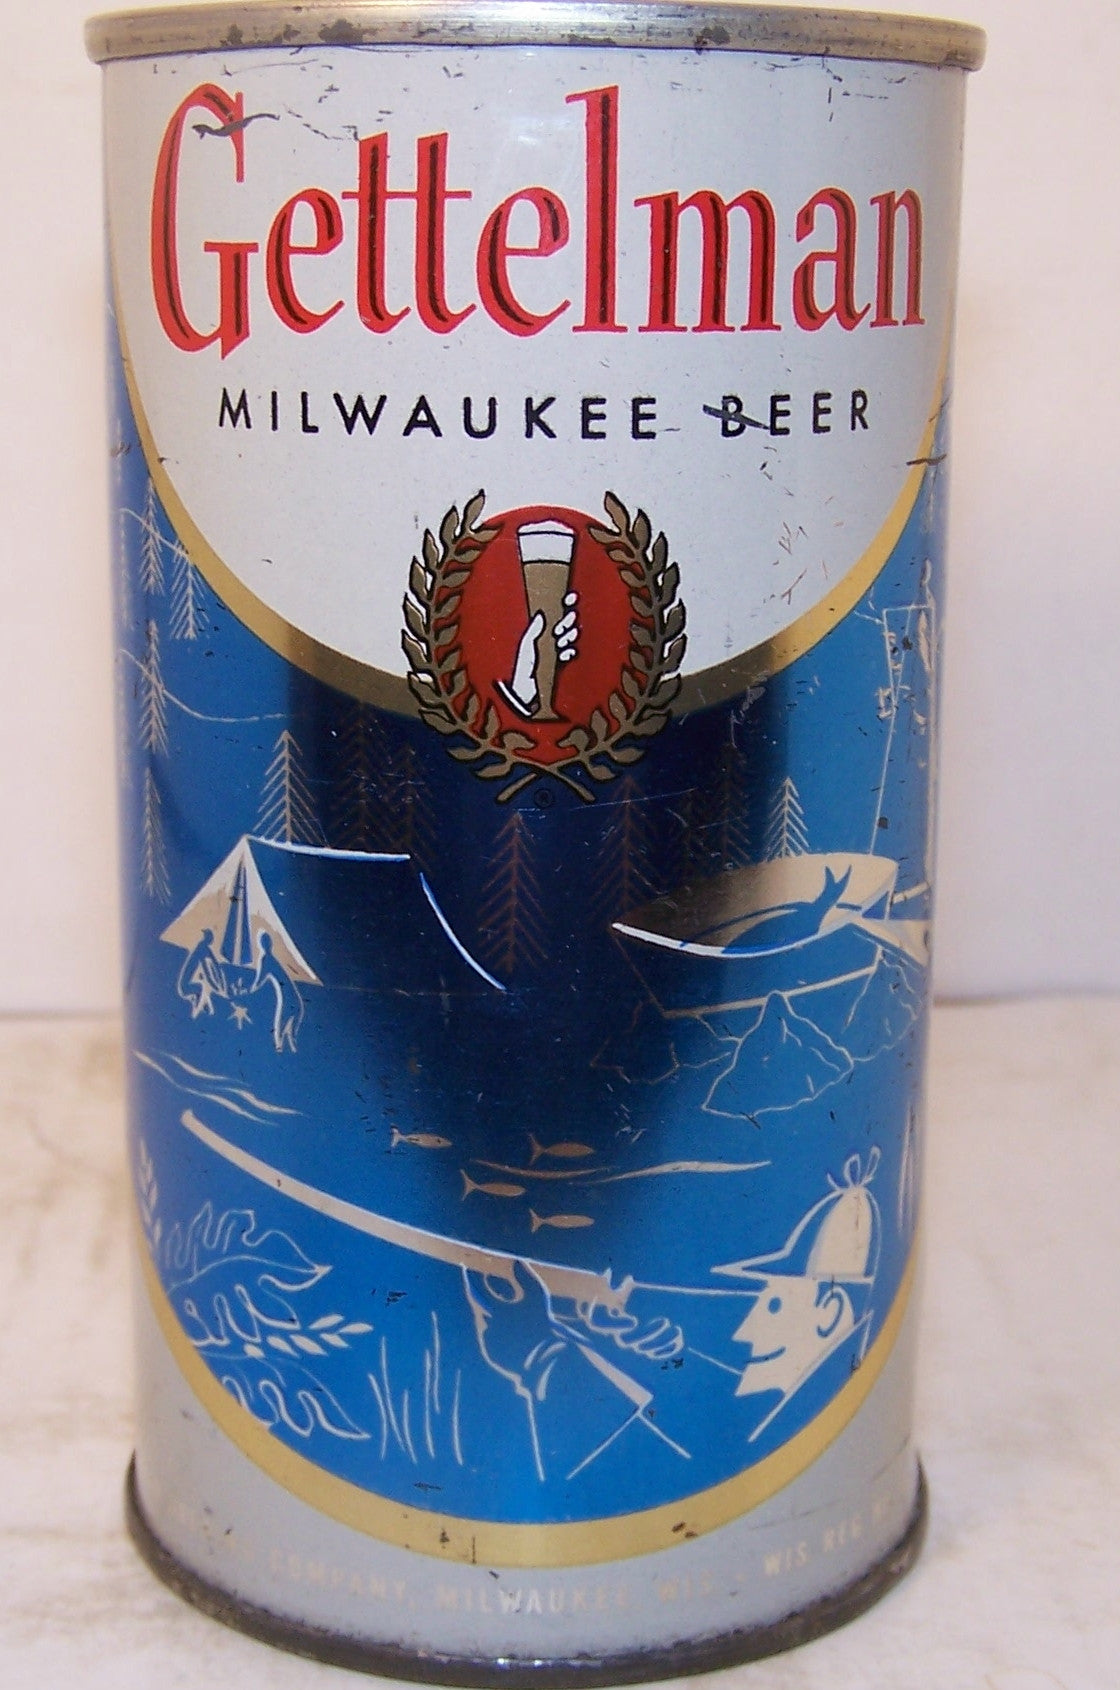 Gettelman "fishing" beer, USBC 69-11, Grade 1- Sold 4/24/15